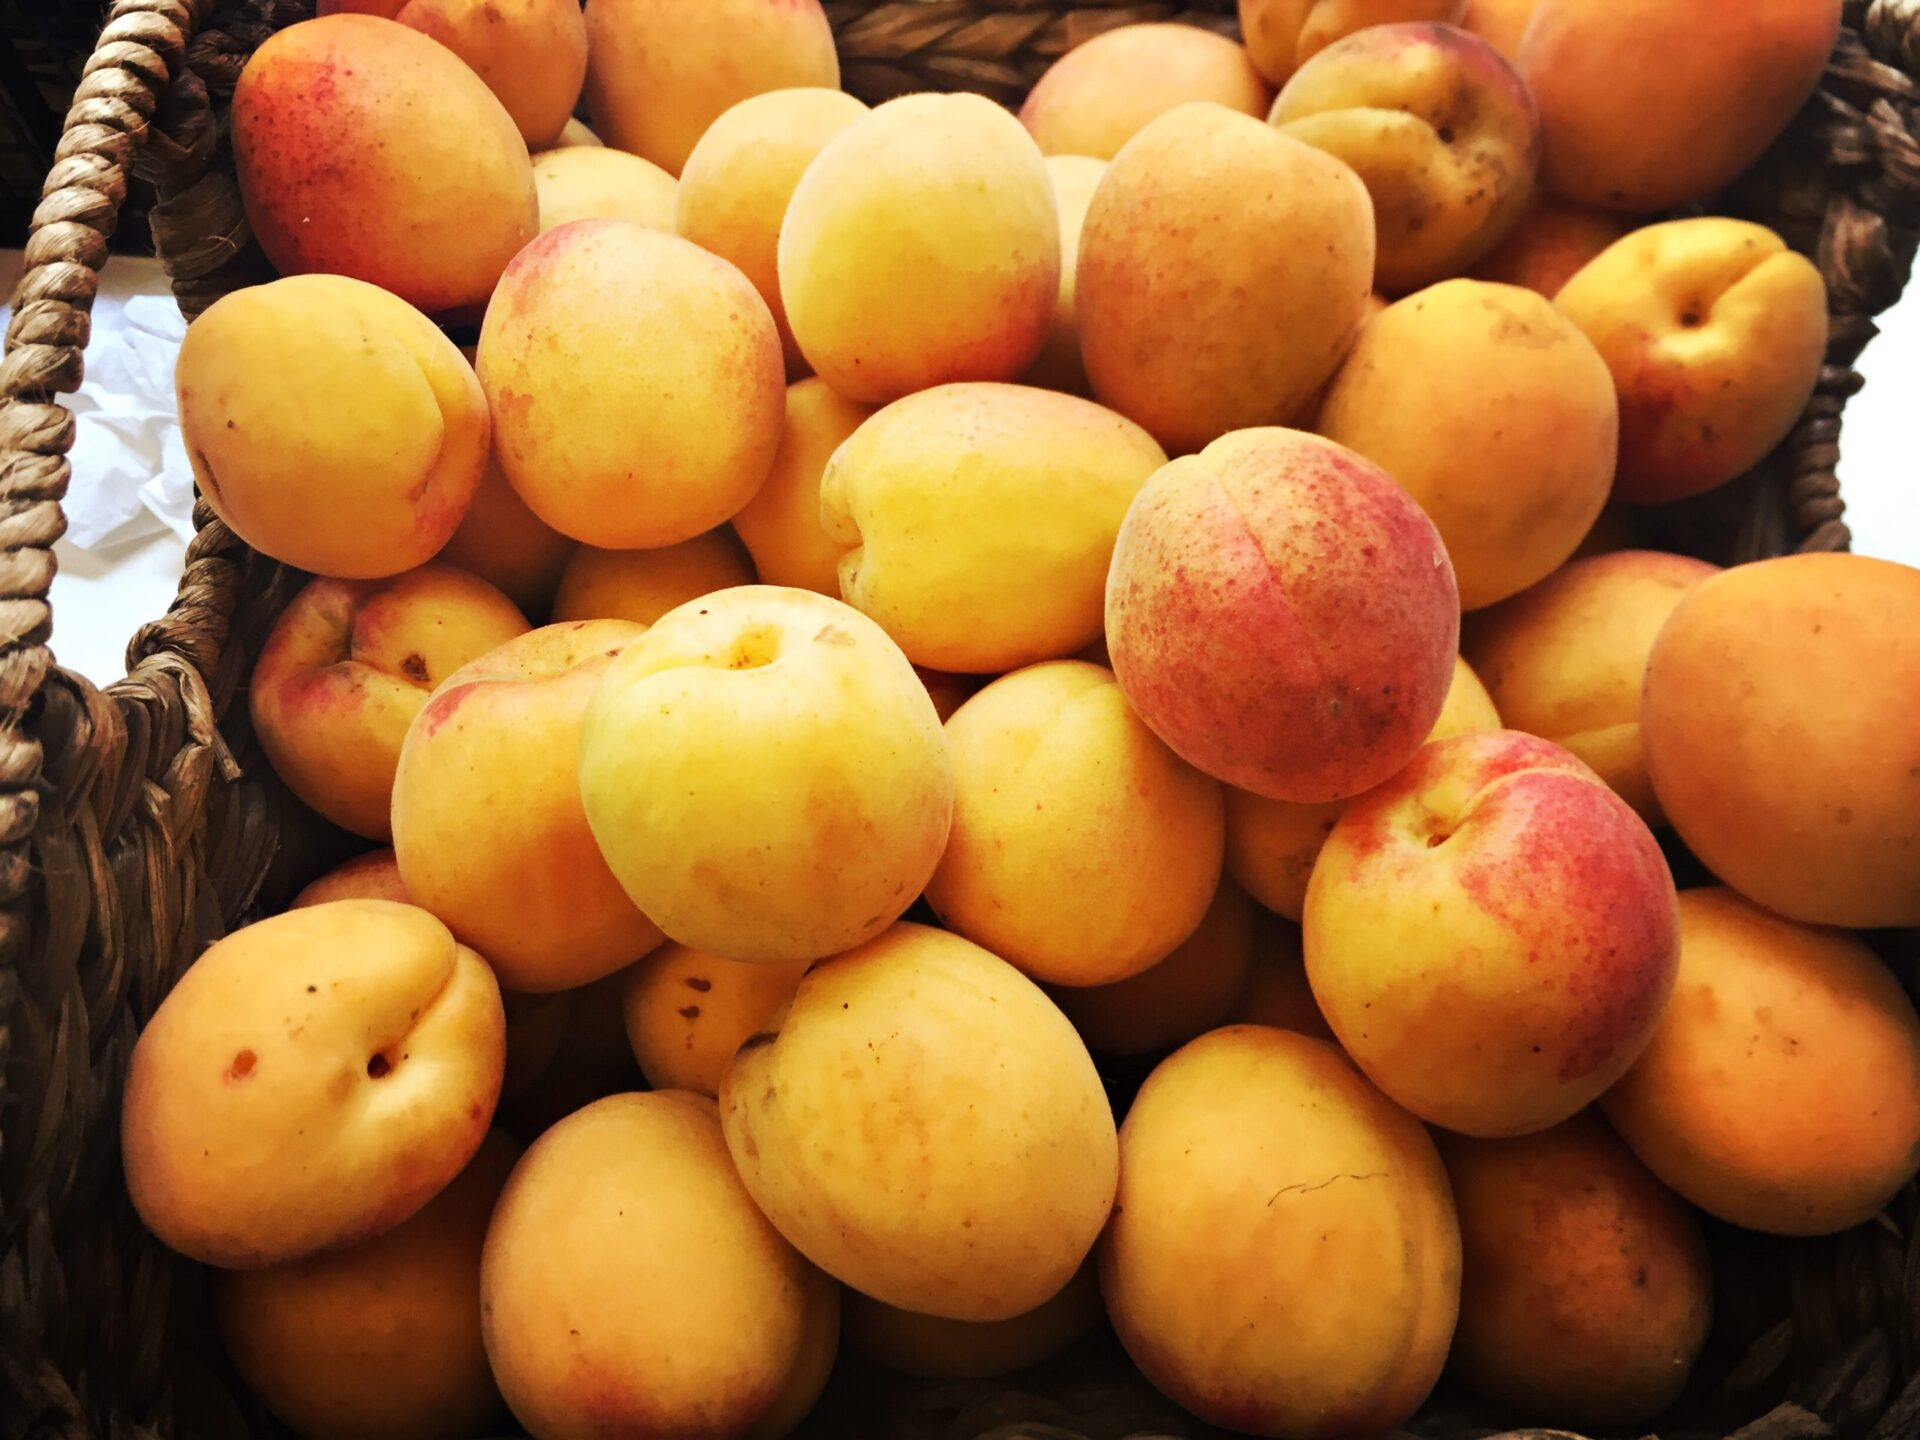 bens-farm-shop-apricot-jam-3